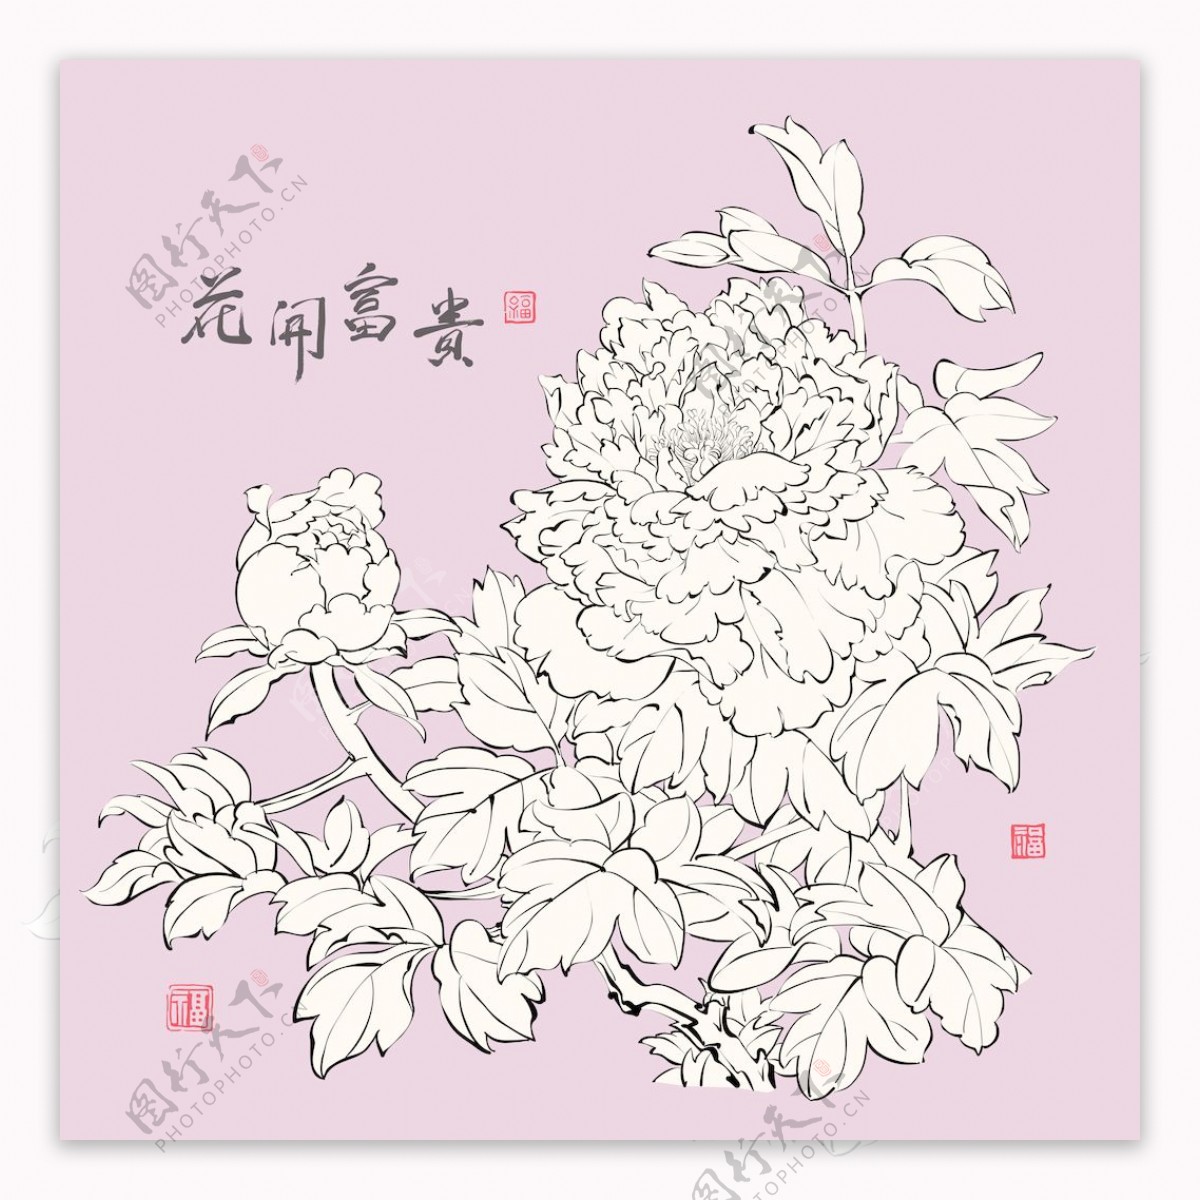 书法艺术的中国牡丹平移向量的水墨画红邮票繁荣翻译梅花好运